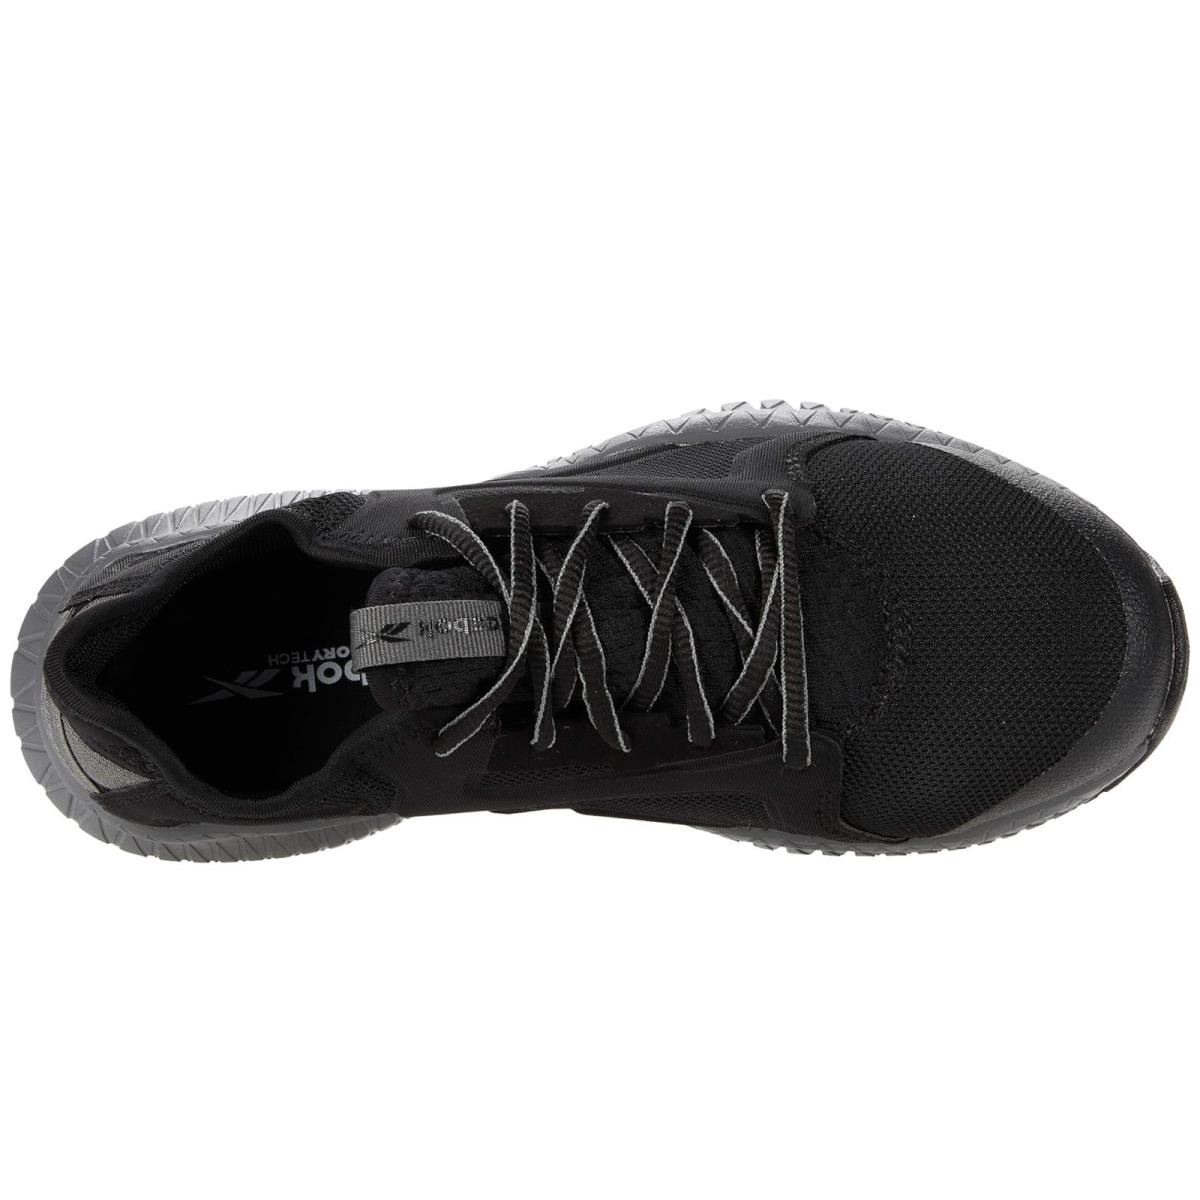 Reebok shoes  - Black/Grey 0